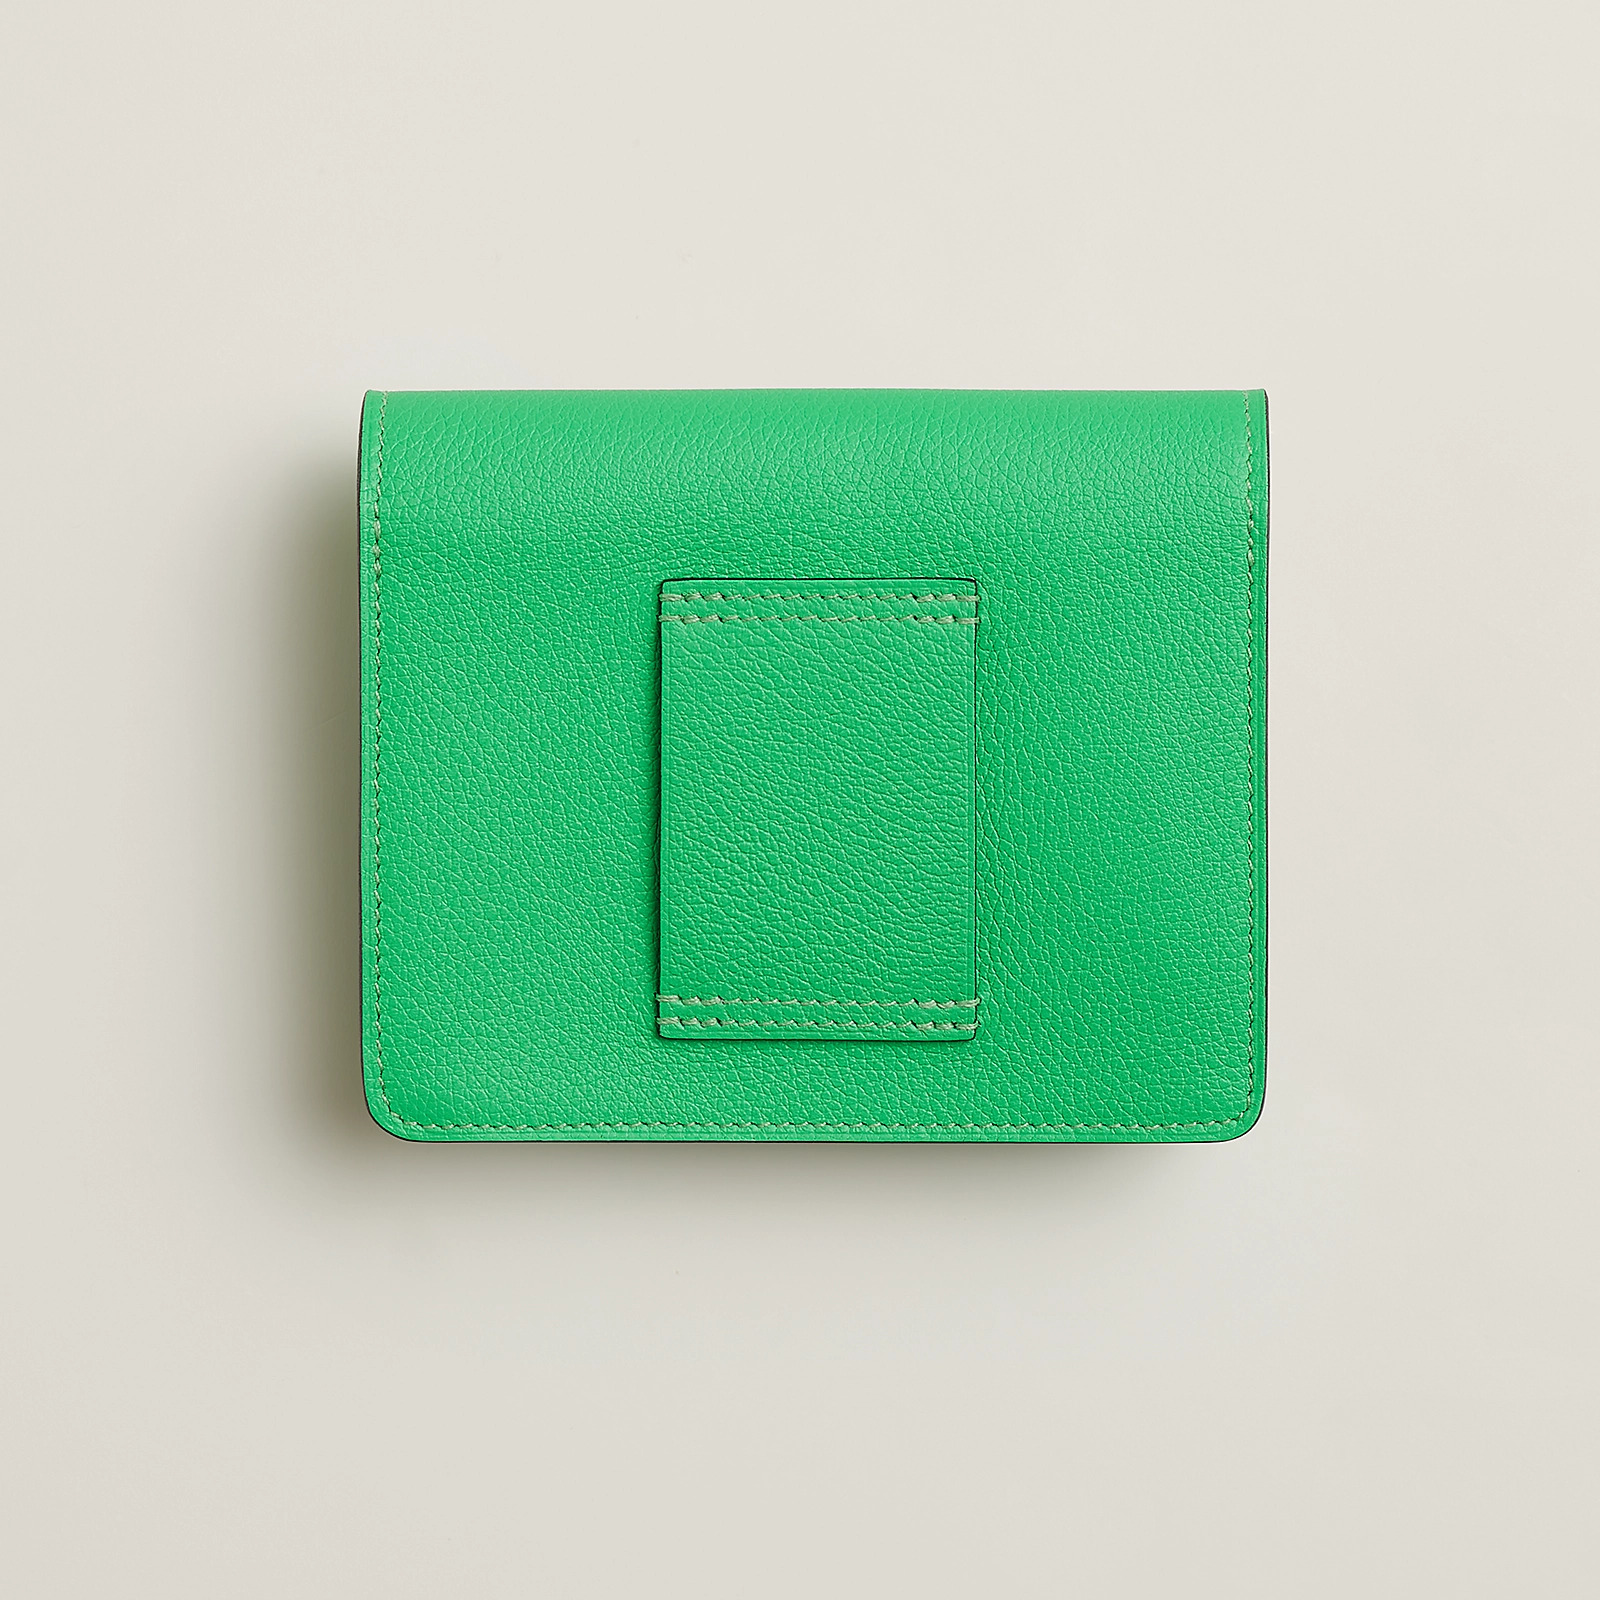 愛馬仕 Hermes Roulis Slim wallet Evercolor 錢包 漫畫綠 / 馬賽克藍